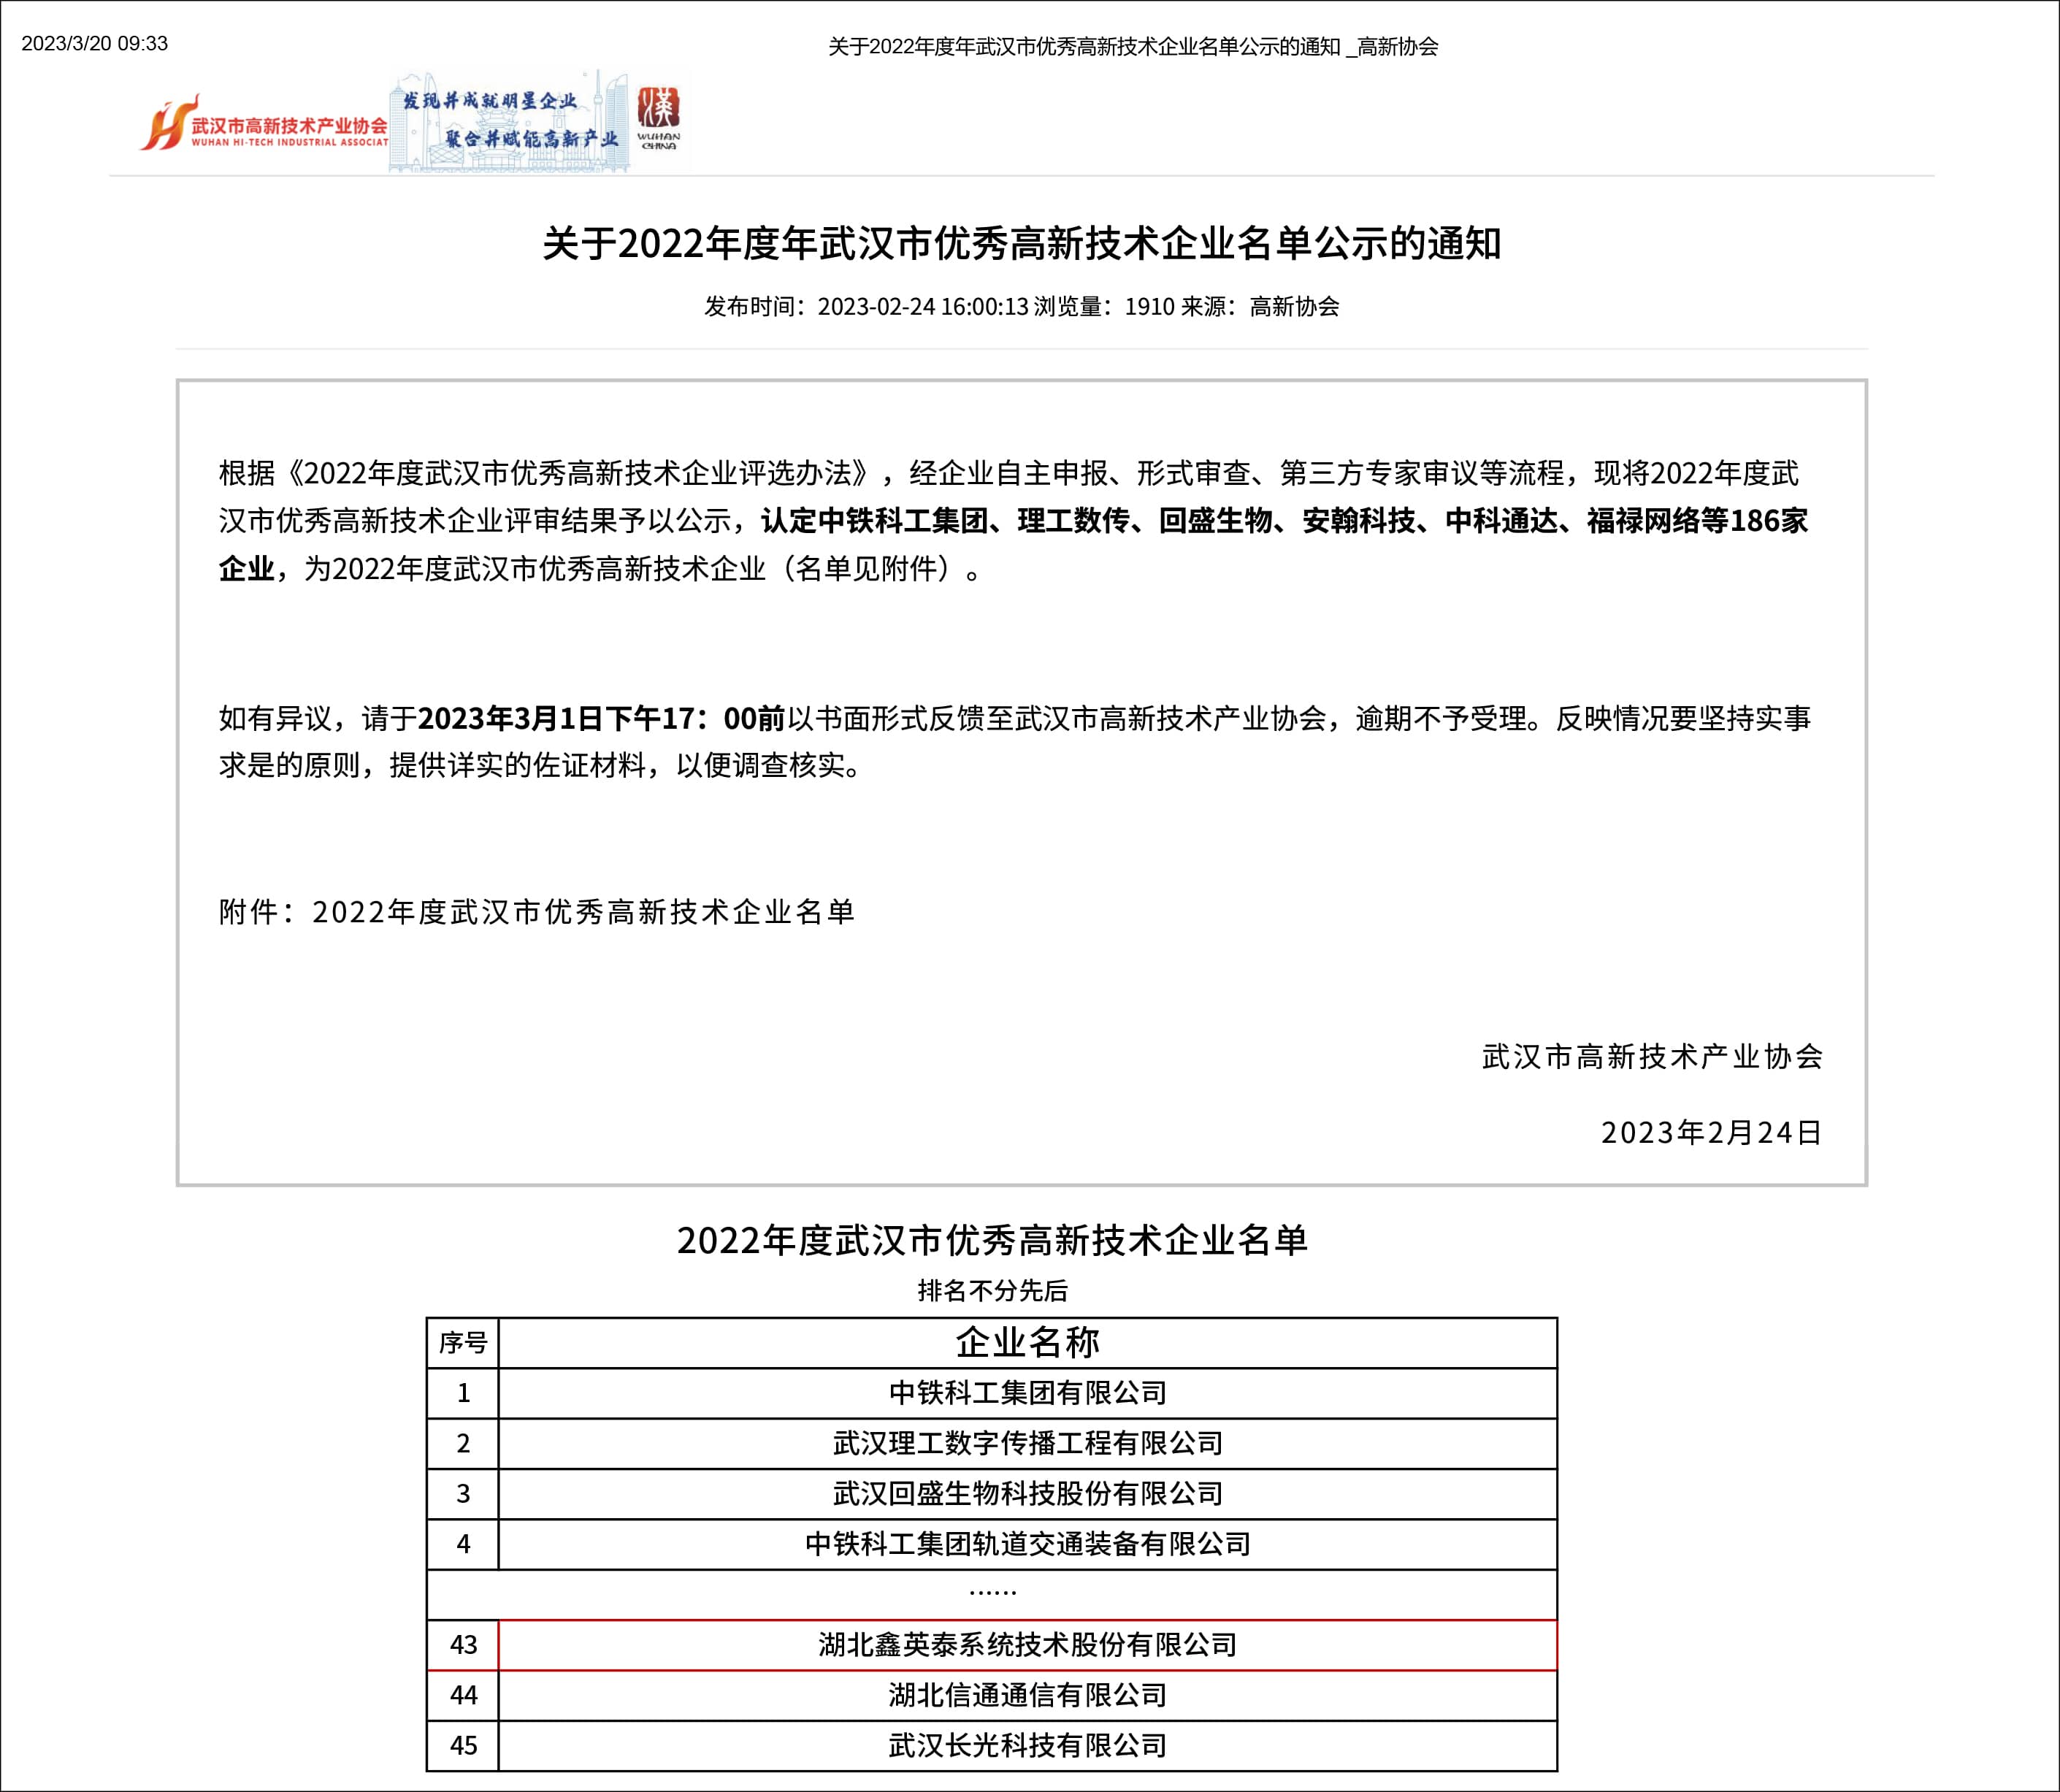 2022年度年武汉市优秀高新技术企业名单公示的通知.jpg